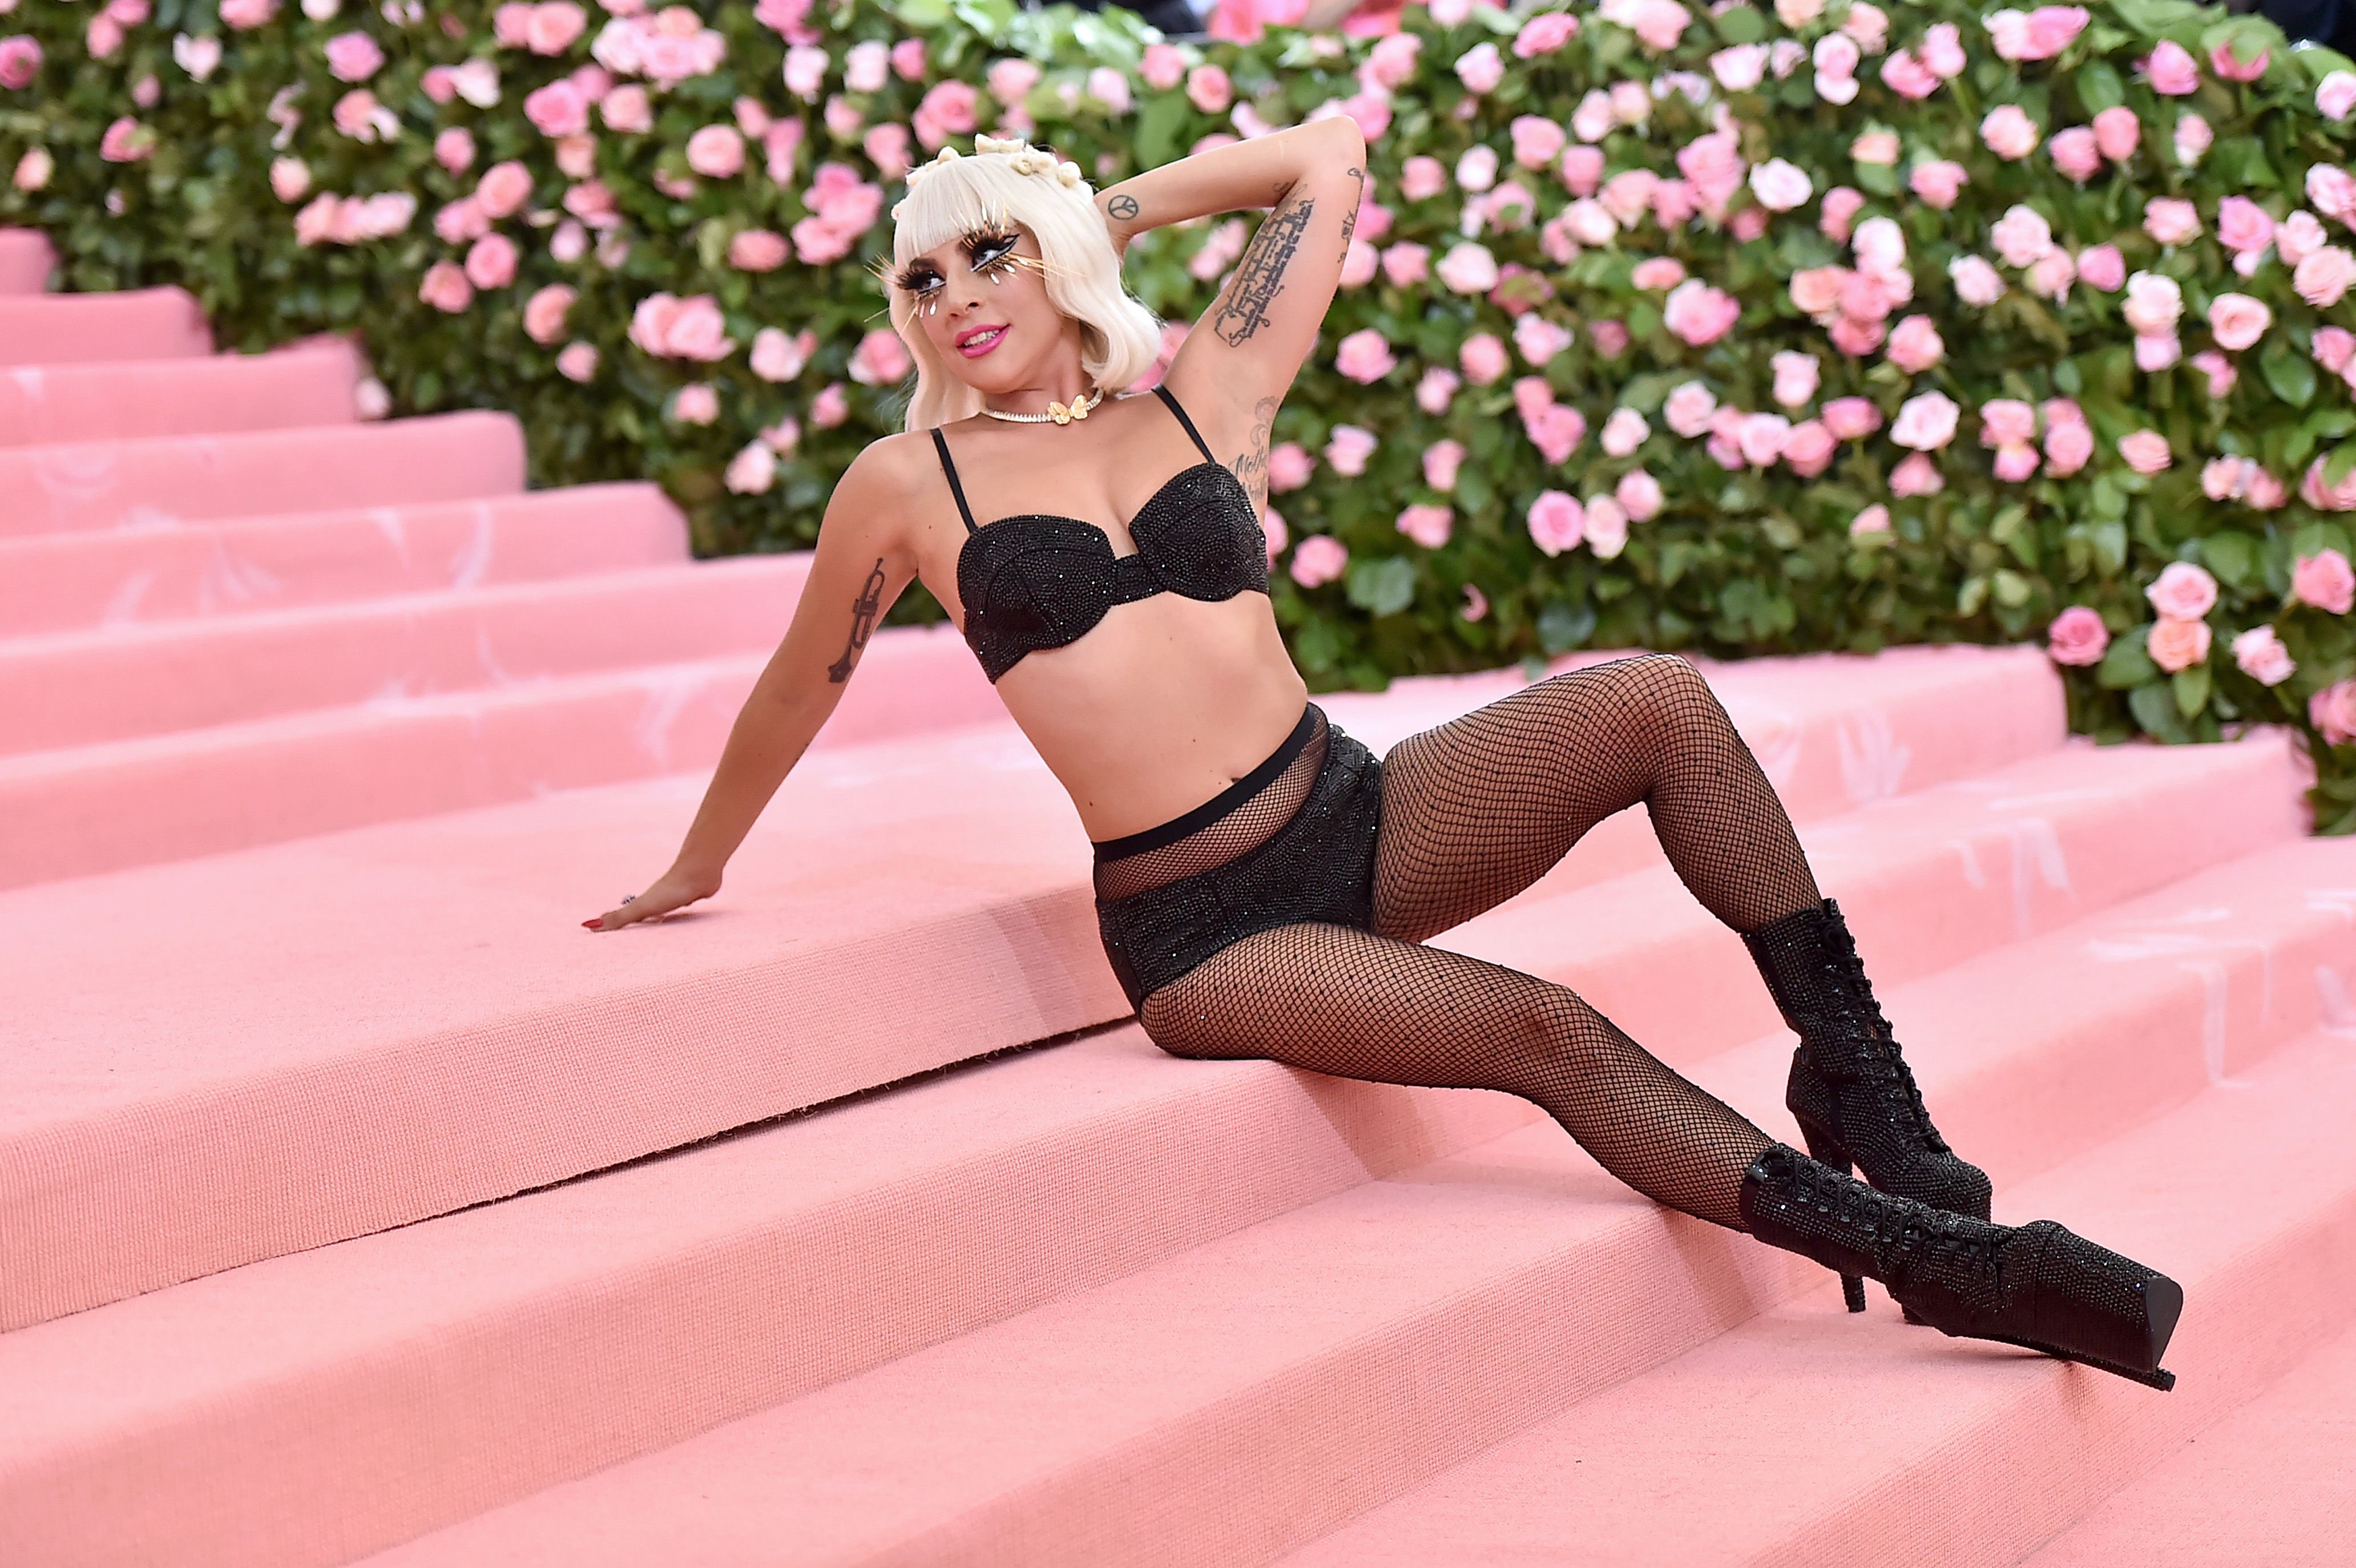 Уникальные фото Леди Гага возносят знаменитость на вершины гламурной эстетики и сексуальности.